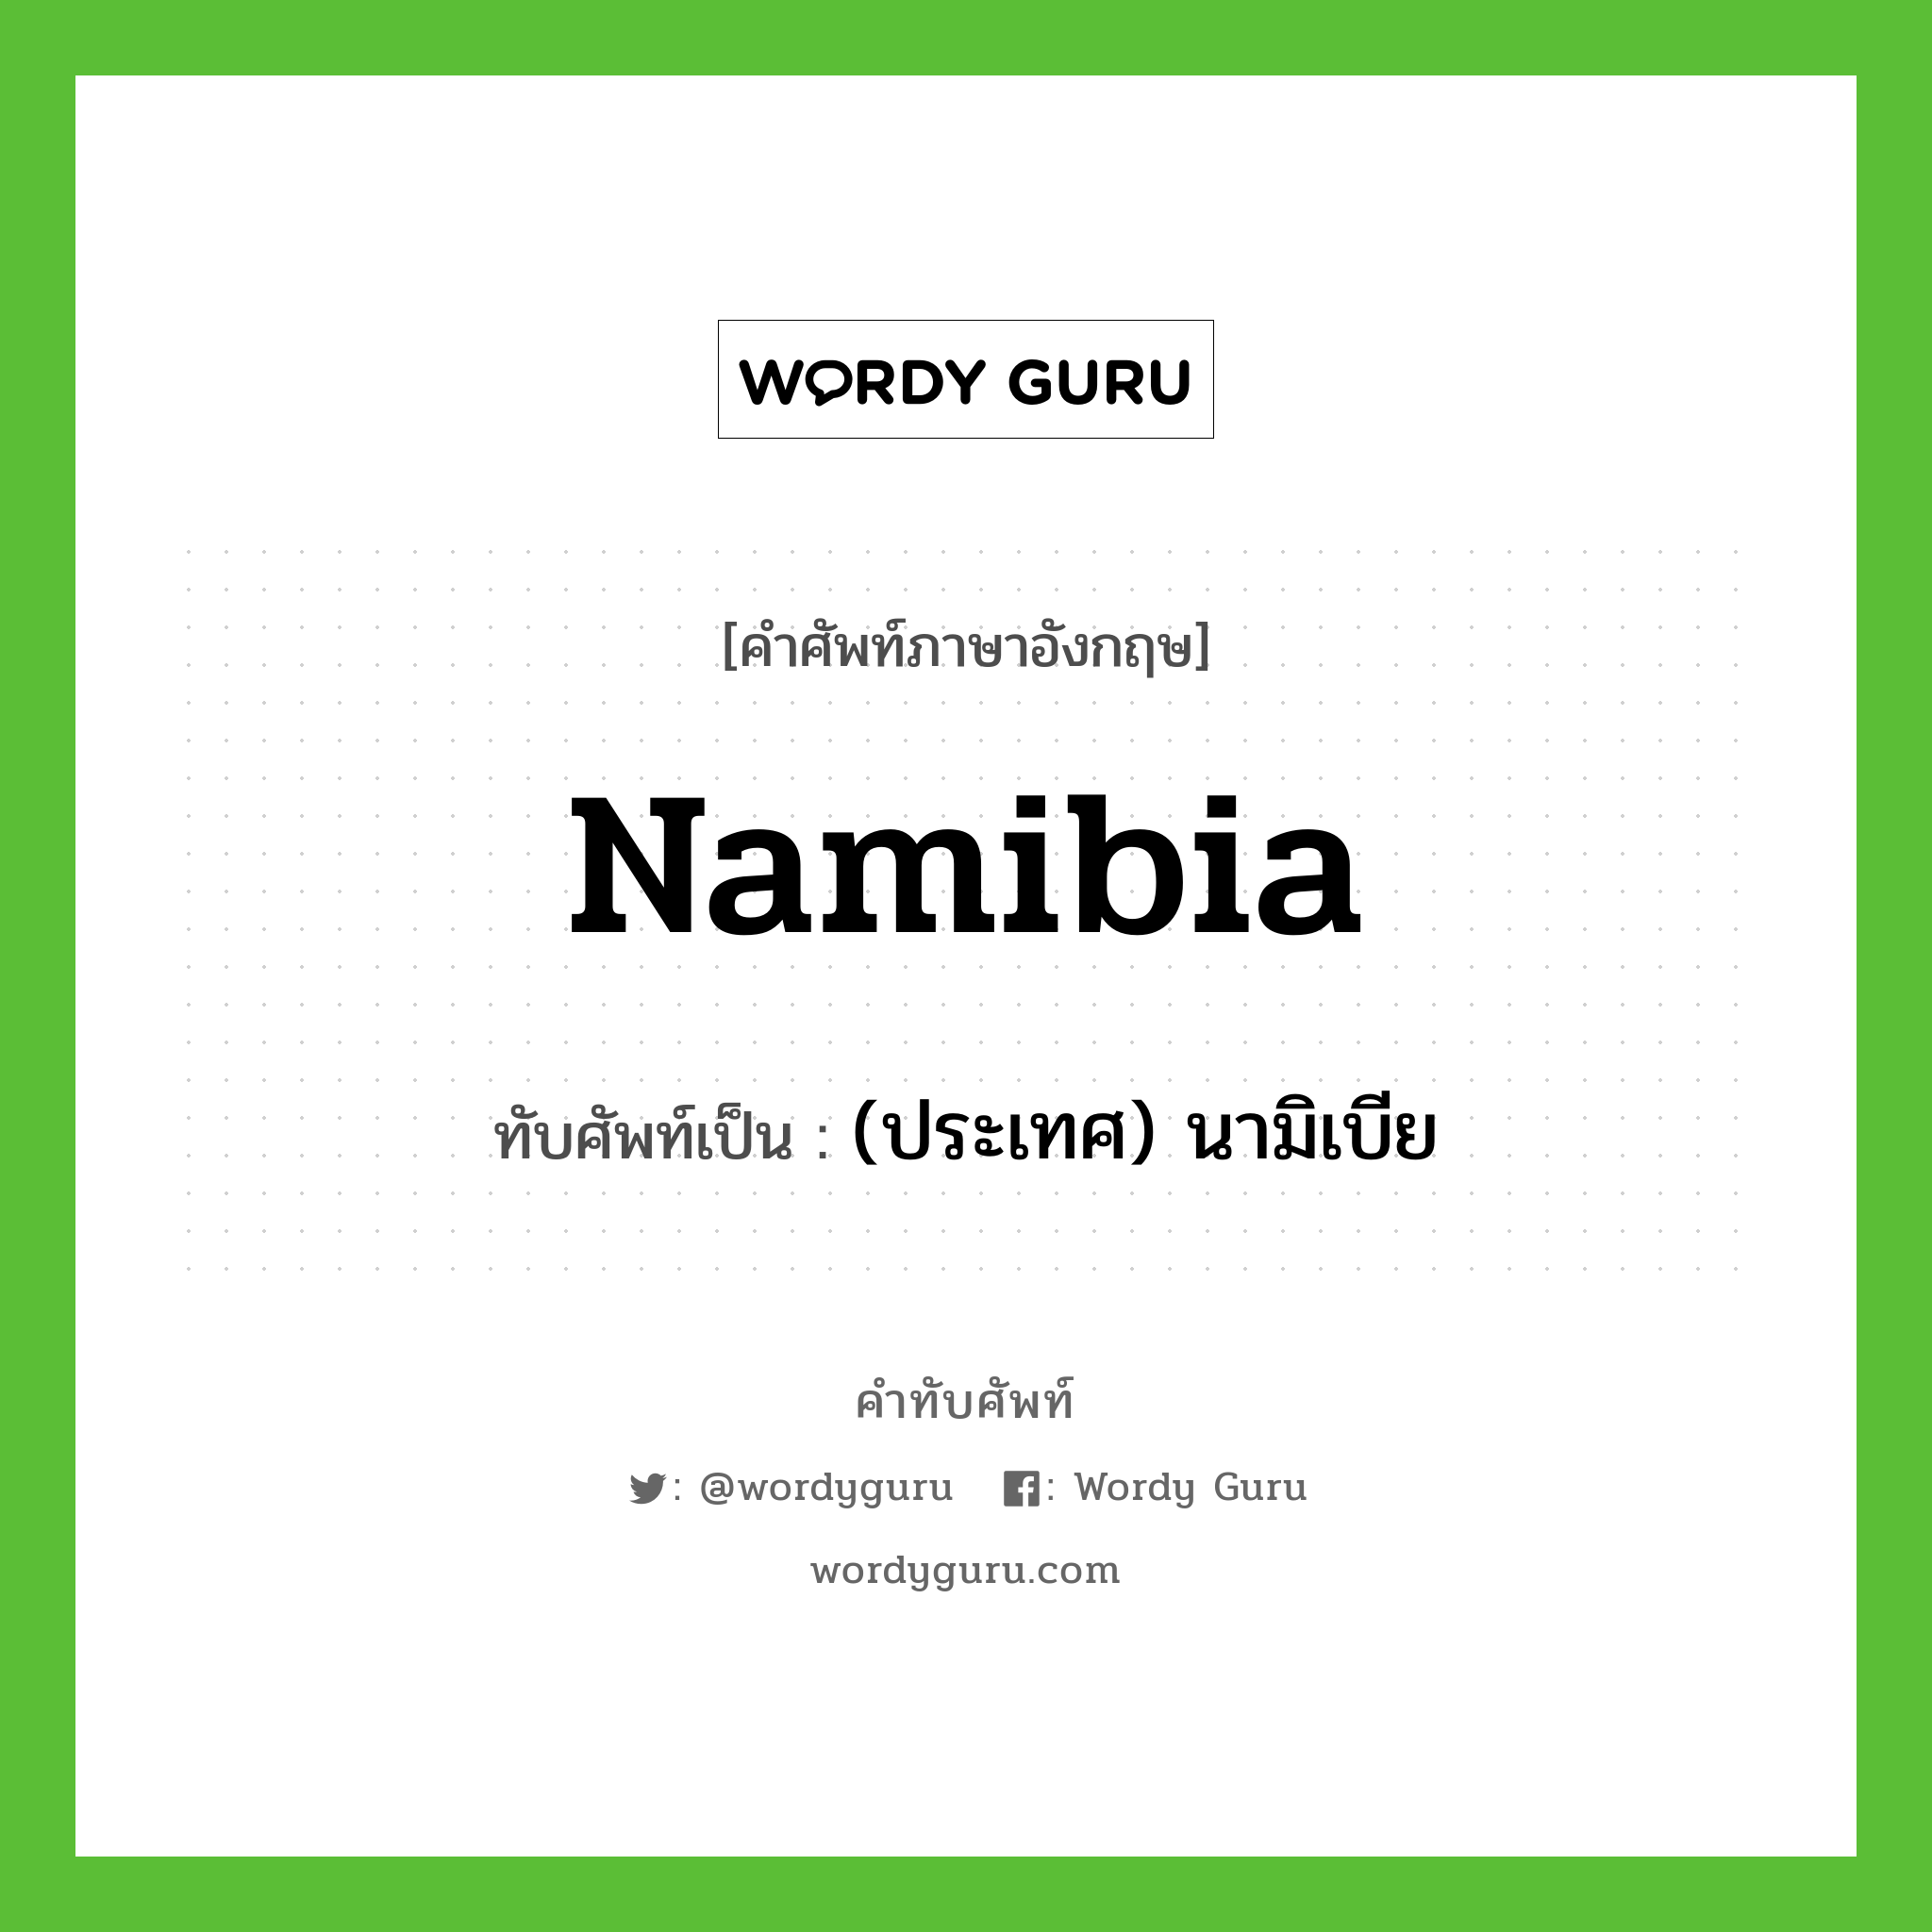 Namibia เขียนเป็นคำไทยว่าอะไร?, คำศัพท์ภาษาอังกฤษ Namibia ทับศัพท์เป็น (ประเทศ) นามิเบีย